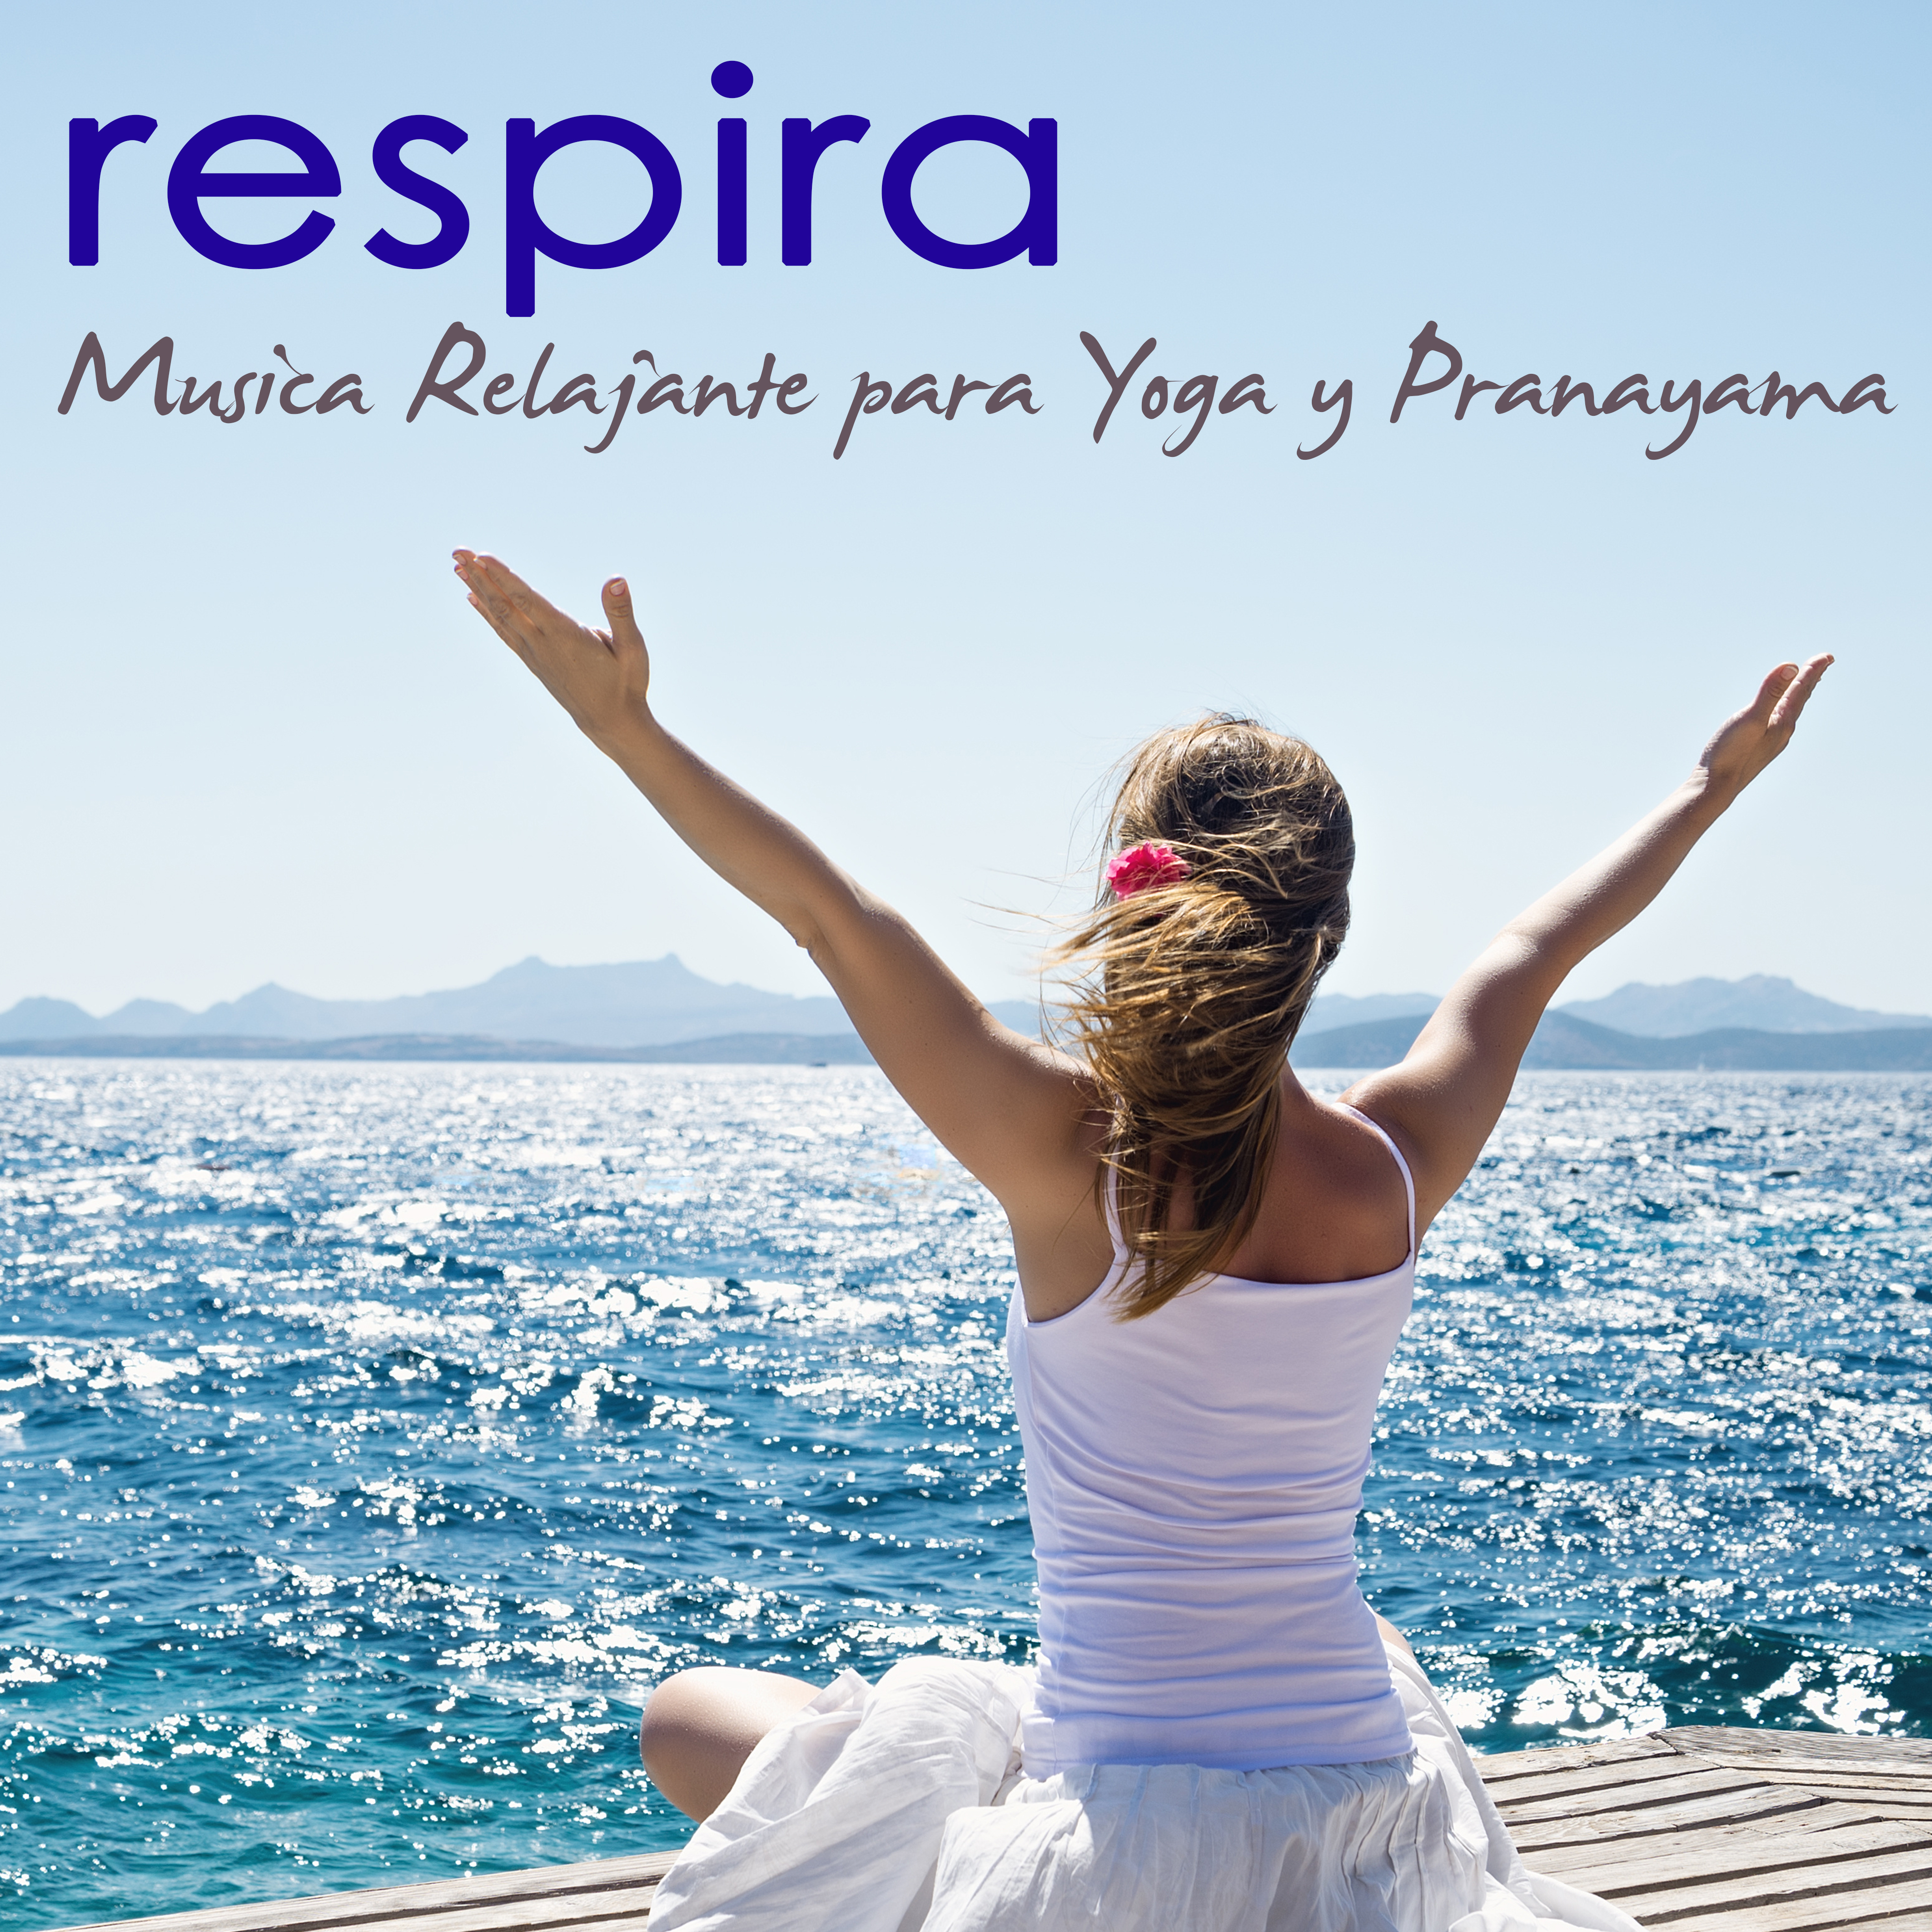 Respira  Musica Relajante para Yoga y Pranayama, Olas del Mar y Naturaleza para Bienestar